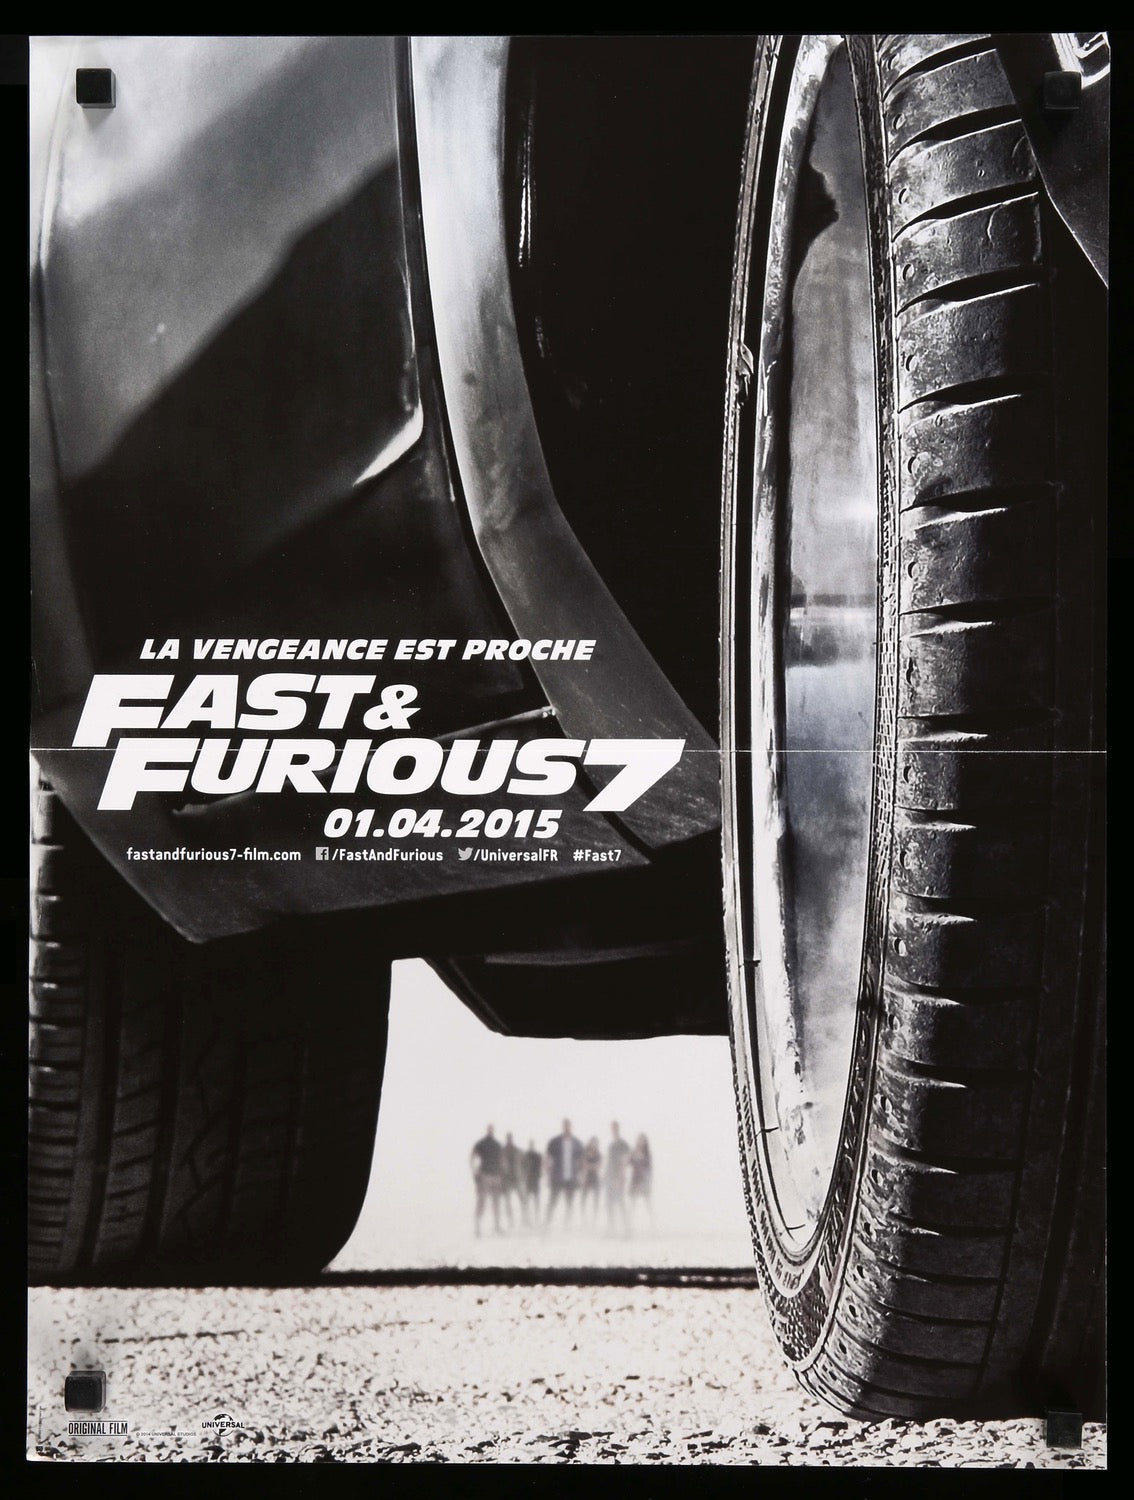 Furious 7 (2015) original movie poster for sale at Original Film Art